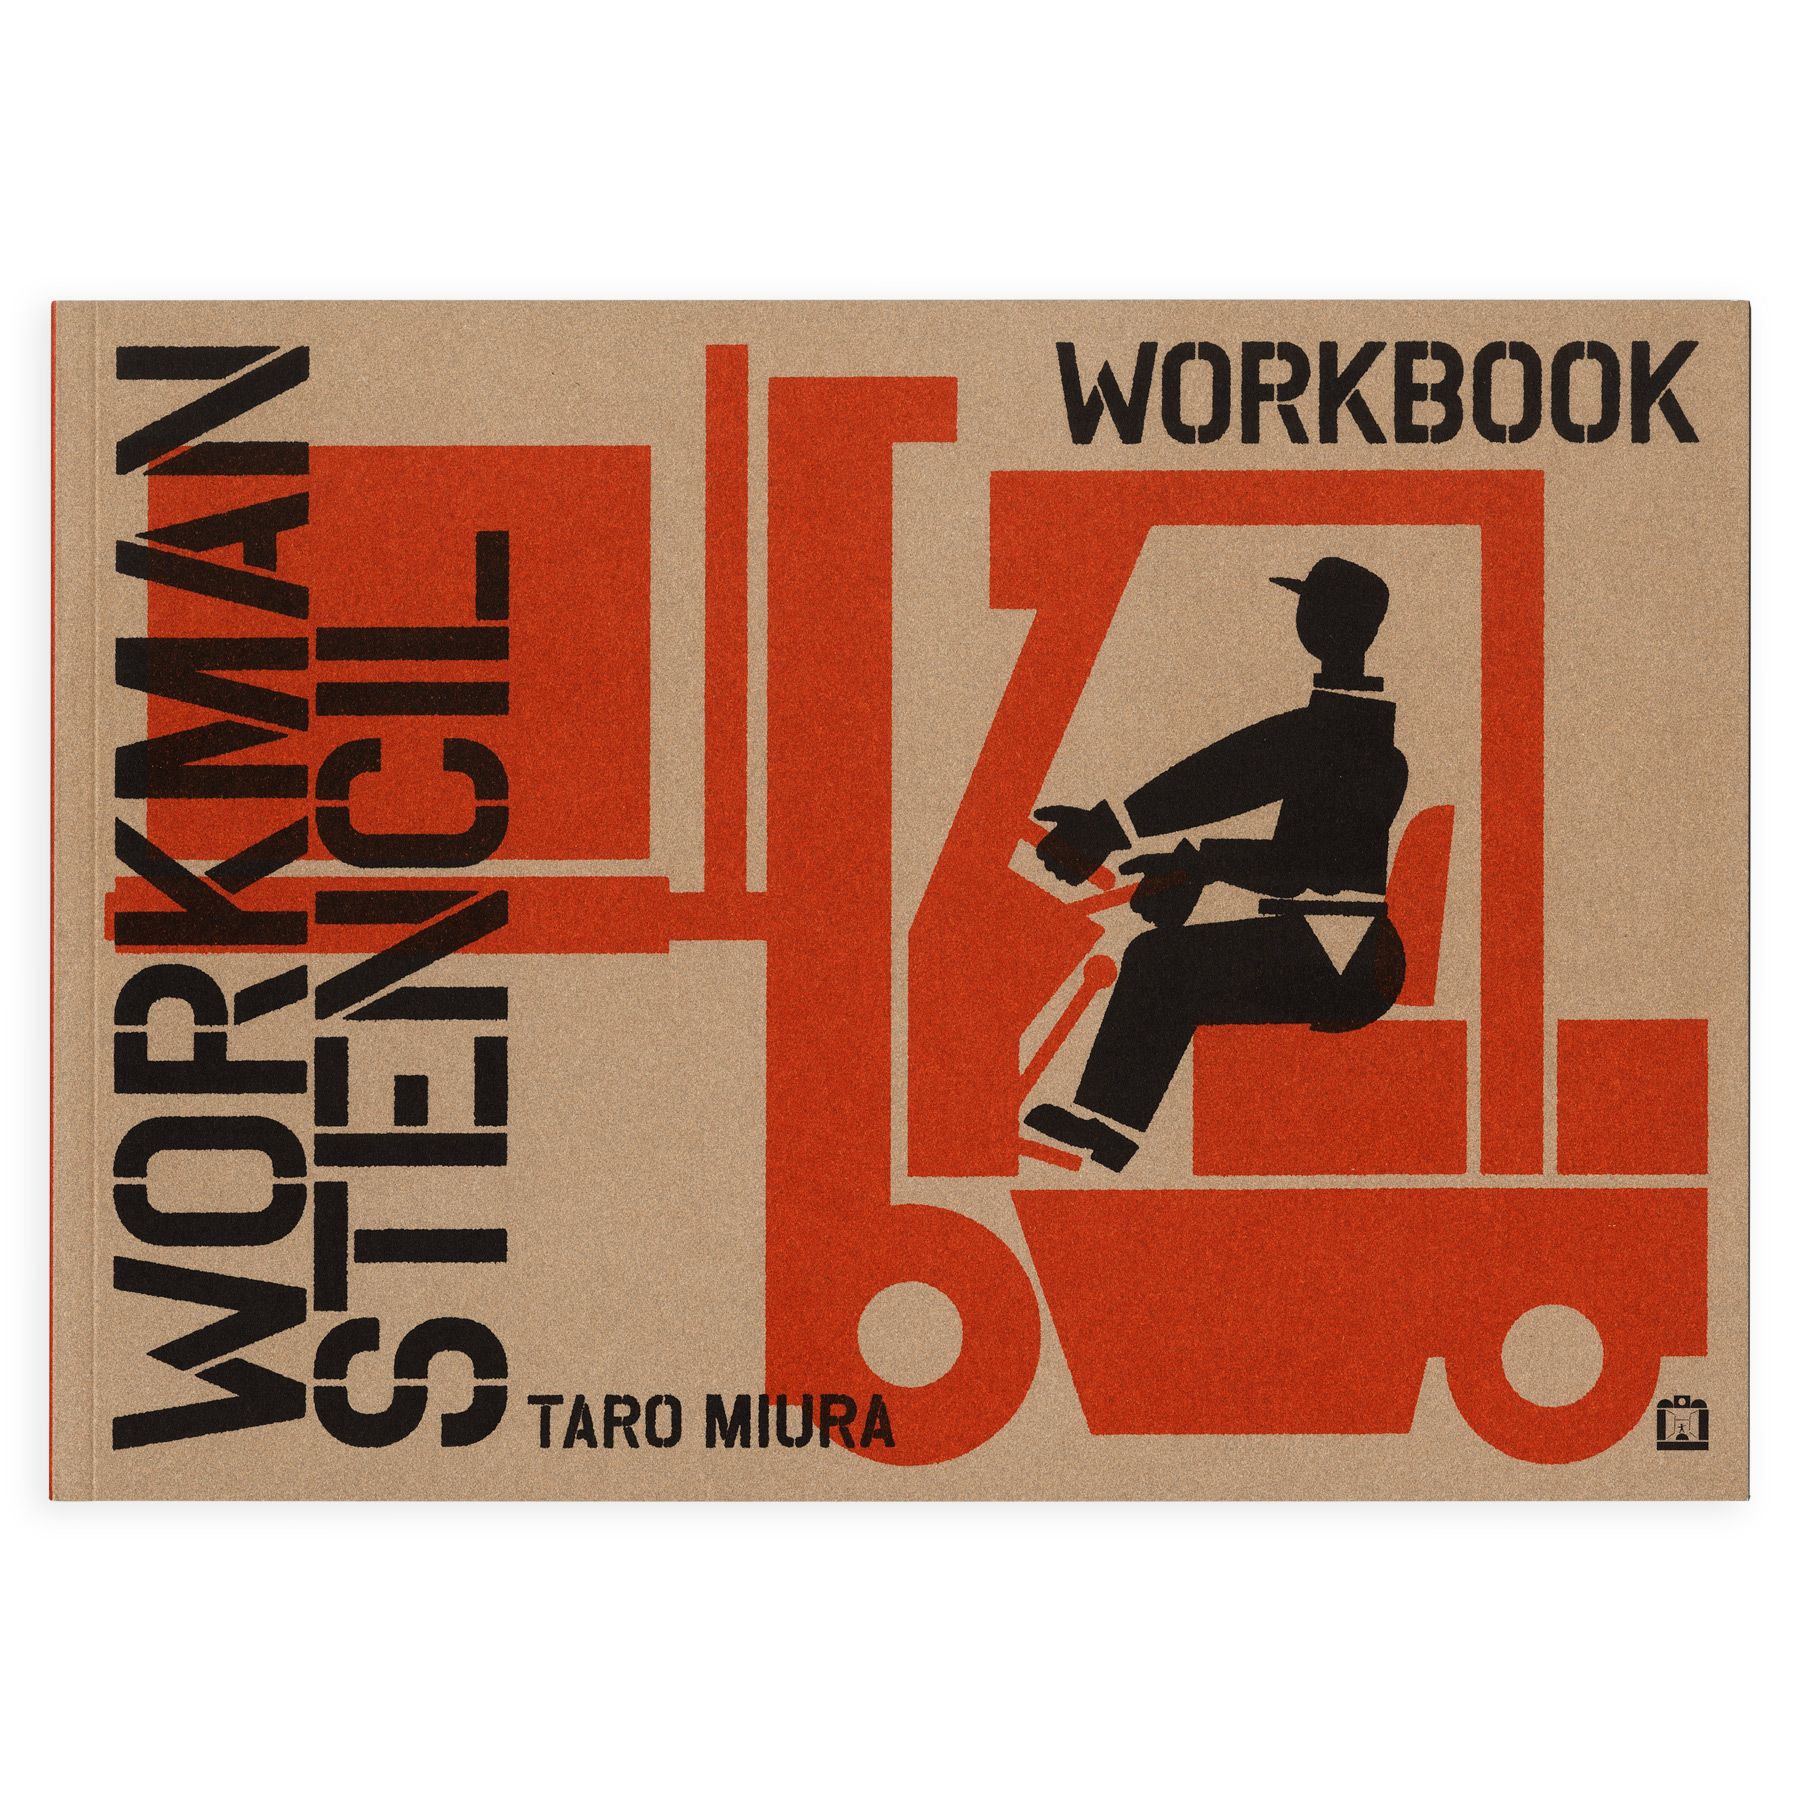 Taro Miura Workman Stencil cover